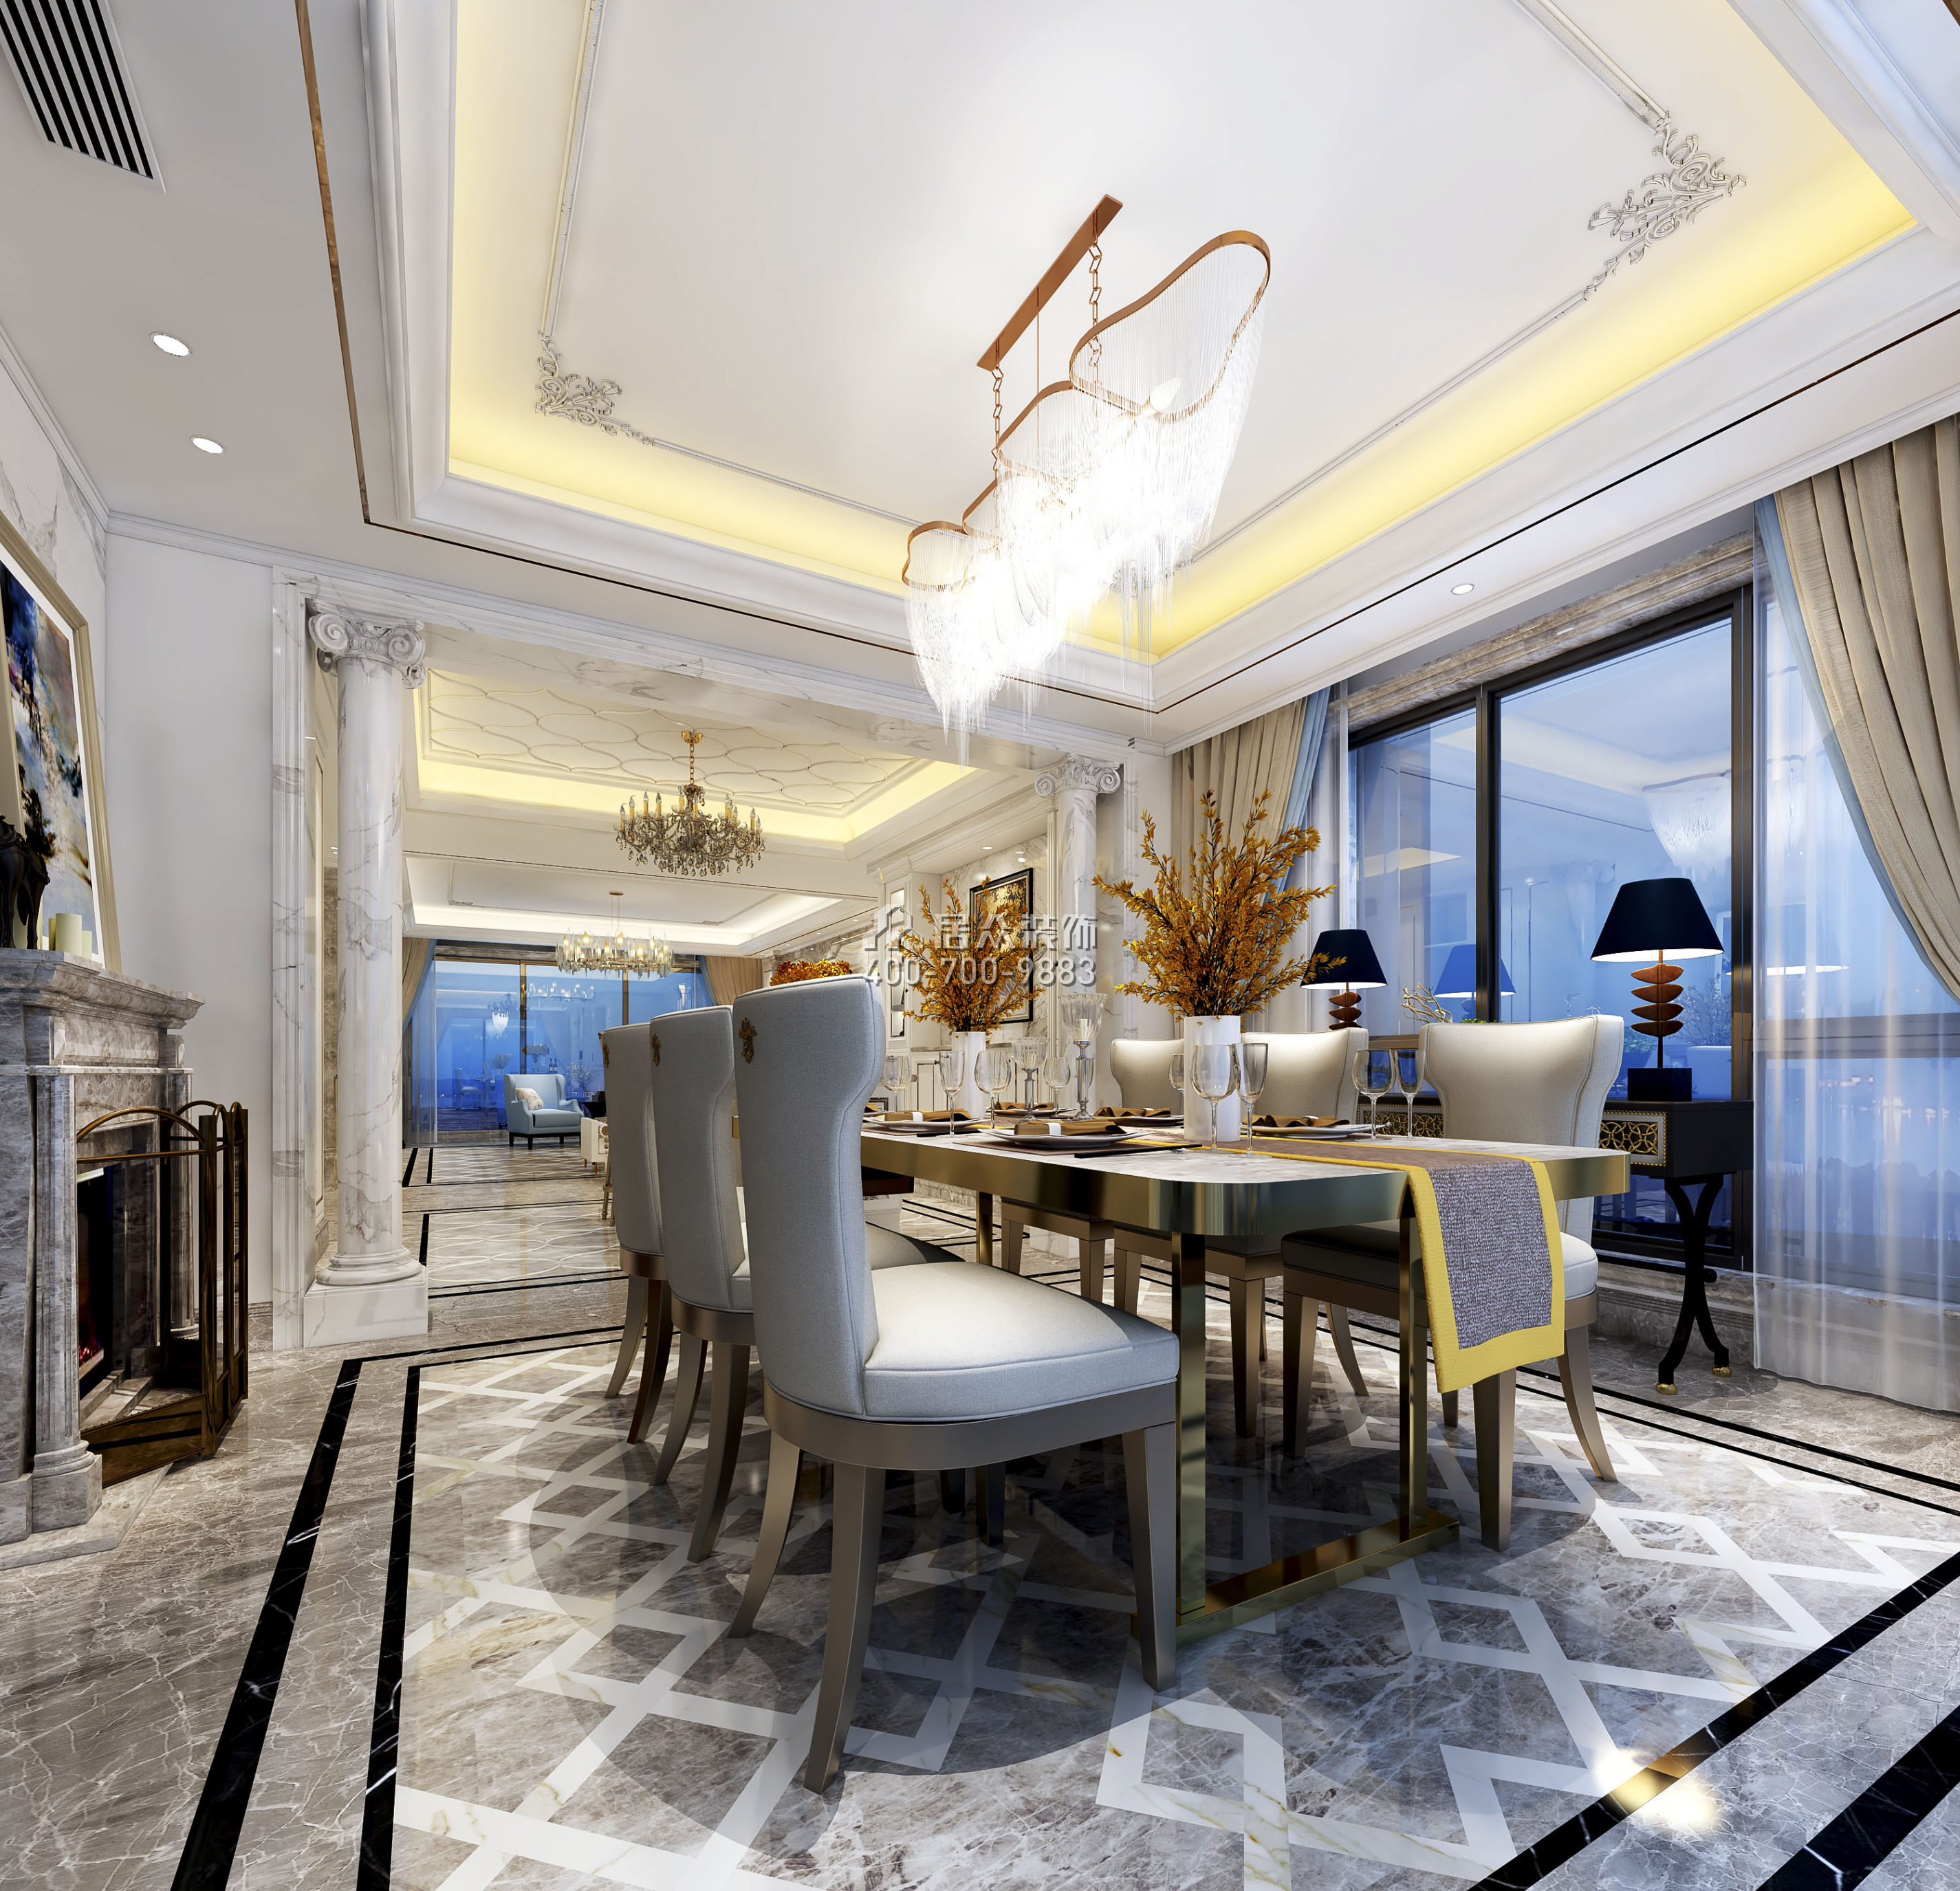 曦湾天馥210平方米欧式风格平层户型餐厅装修效果图